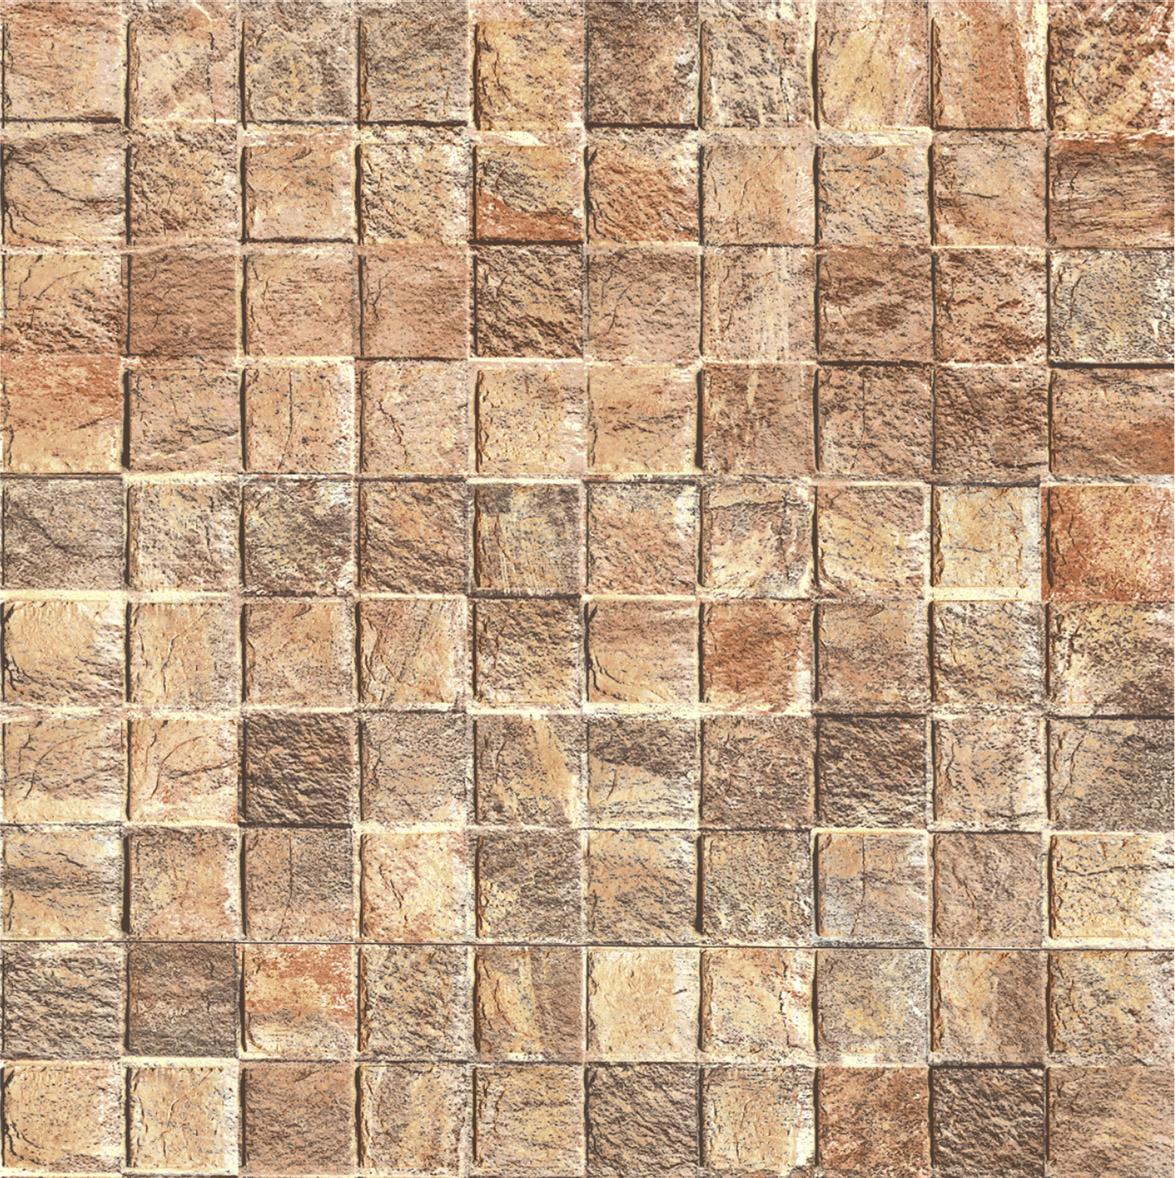 1x1 Tiles for Bathroom Tiles, Kitchen Tiles, Dining Room Tiles